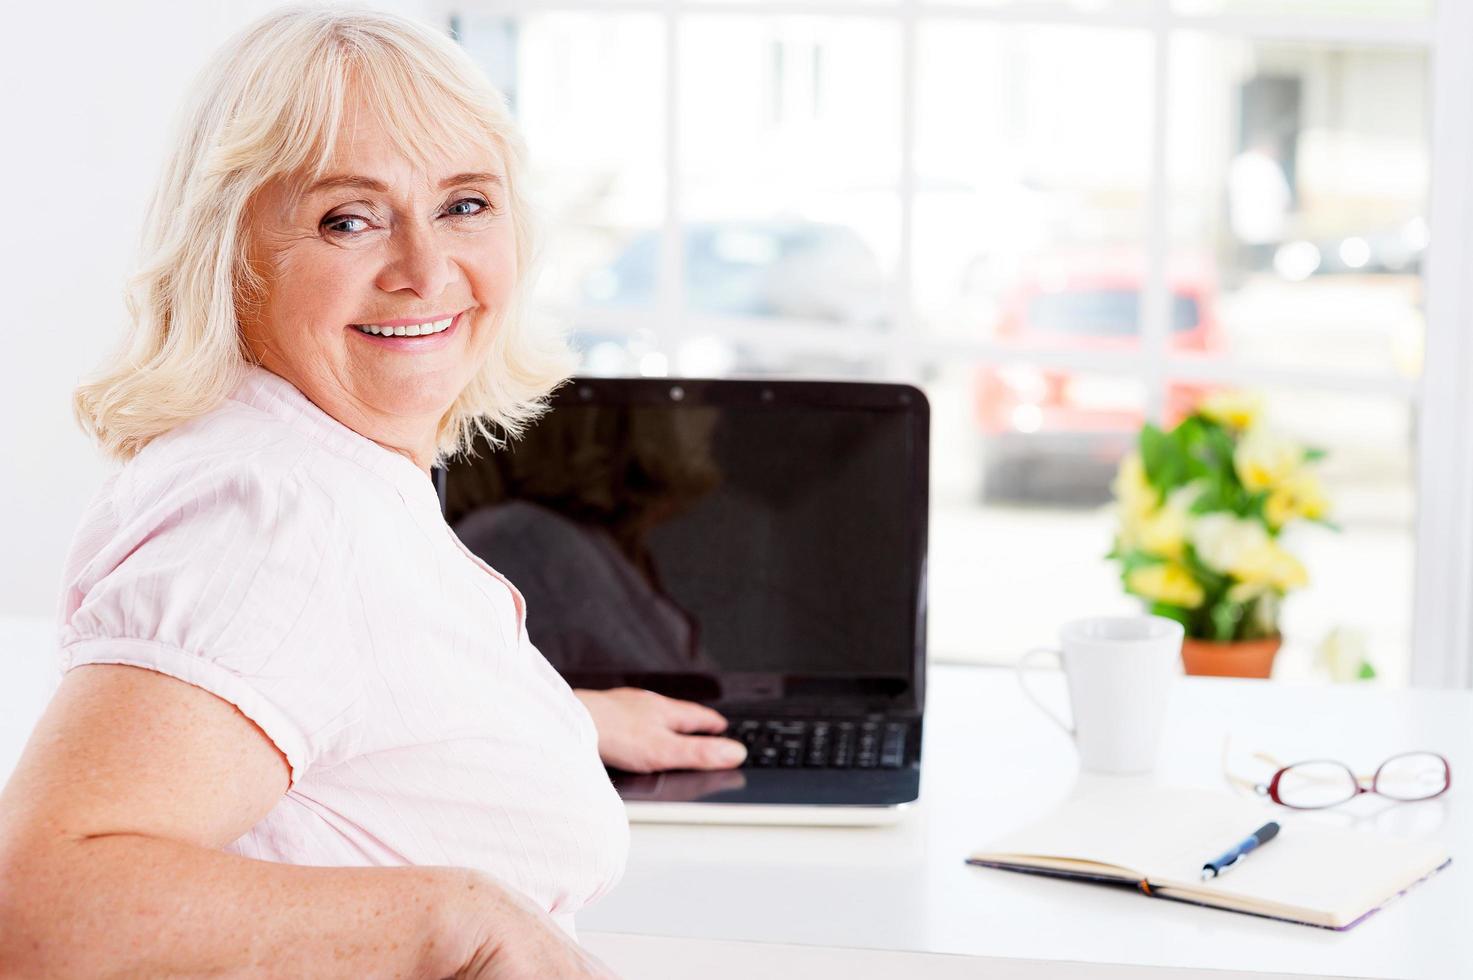 känsla ung och full av energi. bak- se av glad senior kvinna ser över axel och leende medan arbetssätt på bärbar dator foto